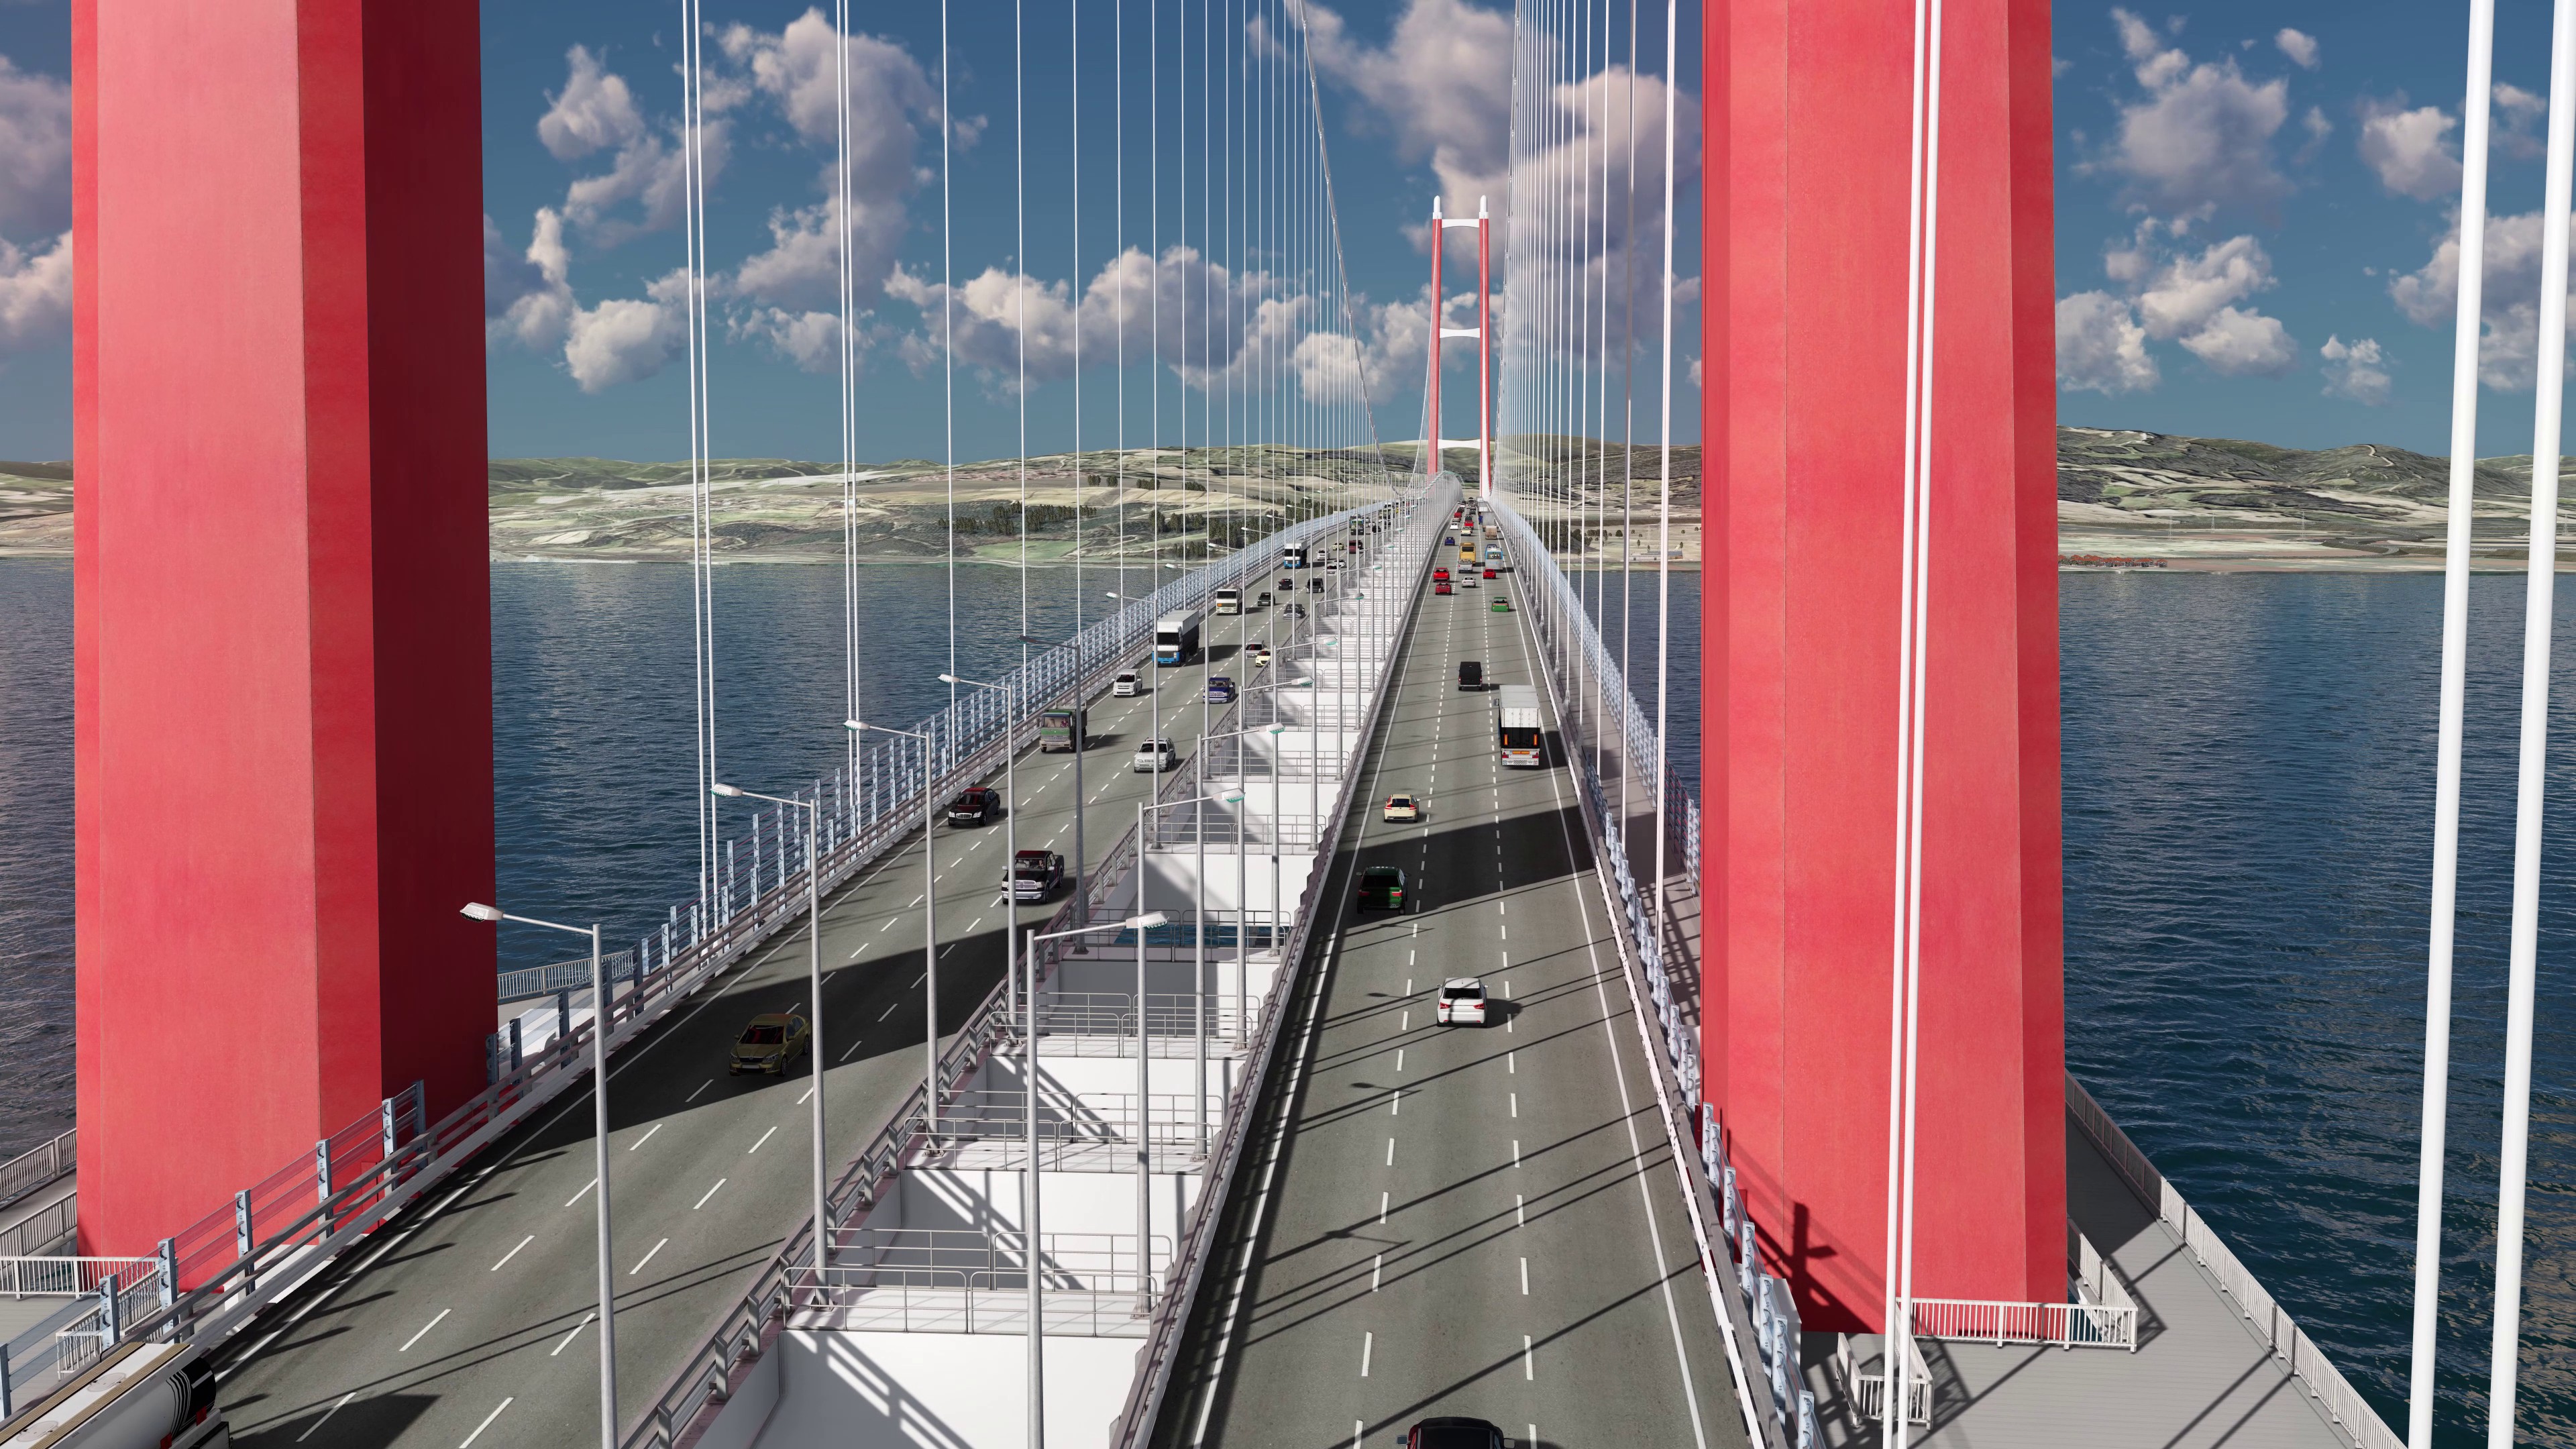 Projeção em 3D da parte interna da ponte, por onde é esperada a passagem de até 45 mil carros por dia  (Foto: 1915canakkale.com / Reprodução)